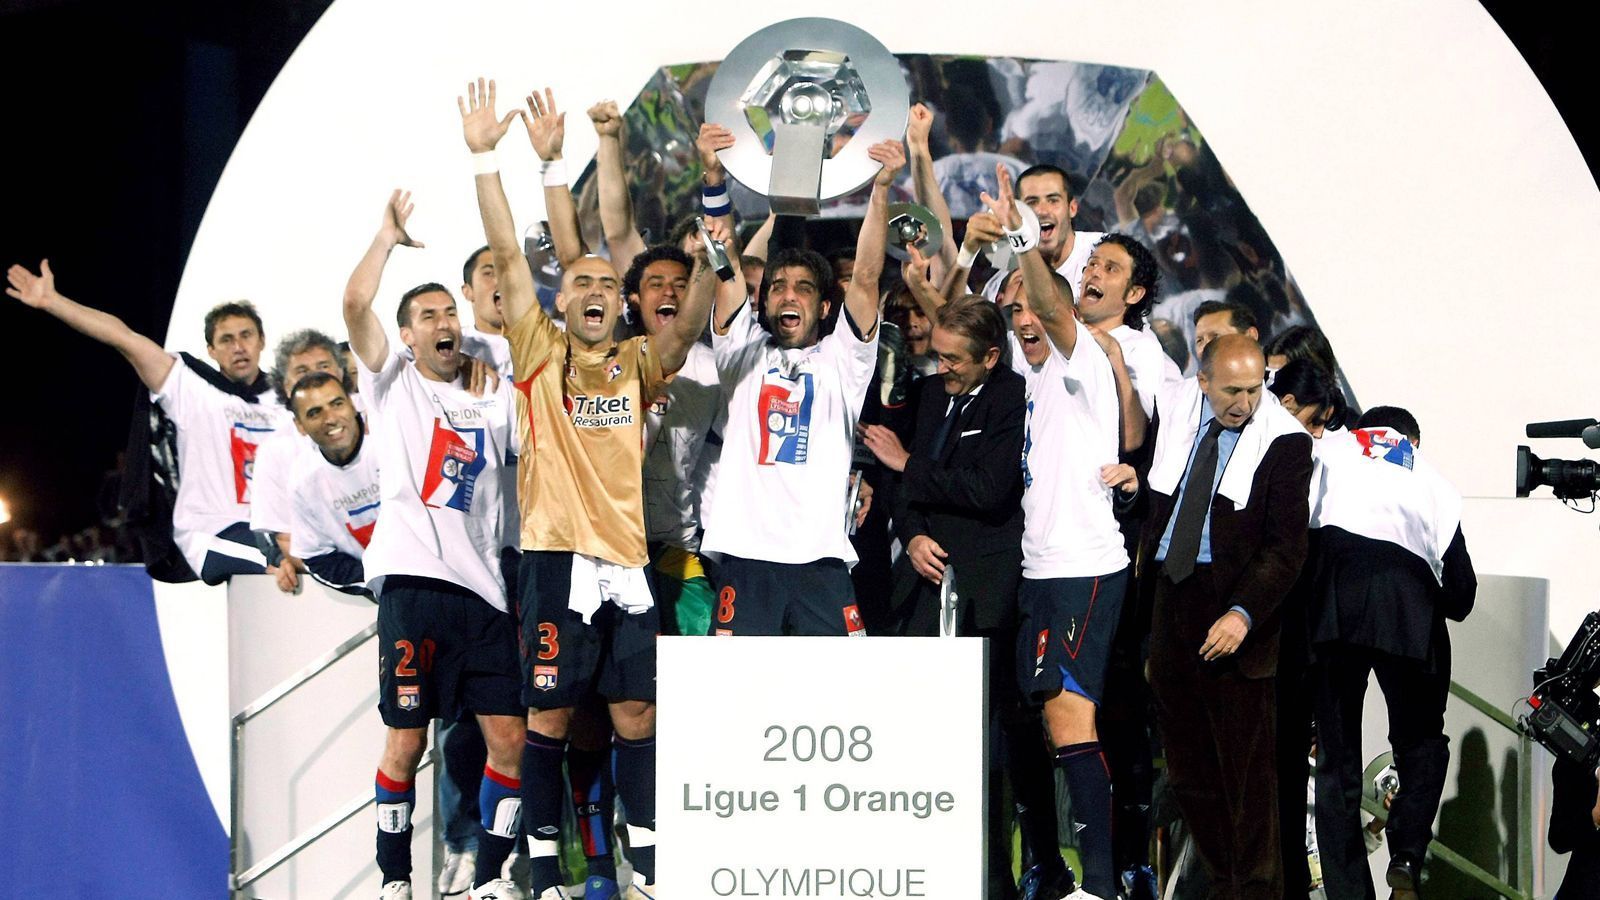 
                <strong>Platz 6 (geteilt) - Frankreich: Olympique Lyon</strong><br>
                &#x2022; Anzahl der Meistertitel in Serie: 7 - <br>&#x2022; Zeitpunkt der Meister-Serie: 2002-2008<br>
              